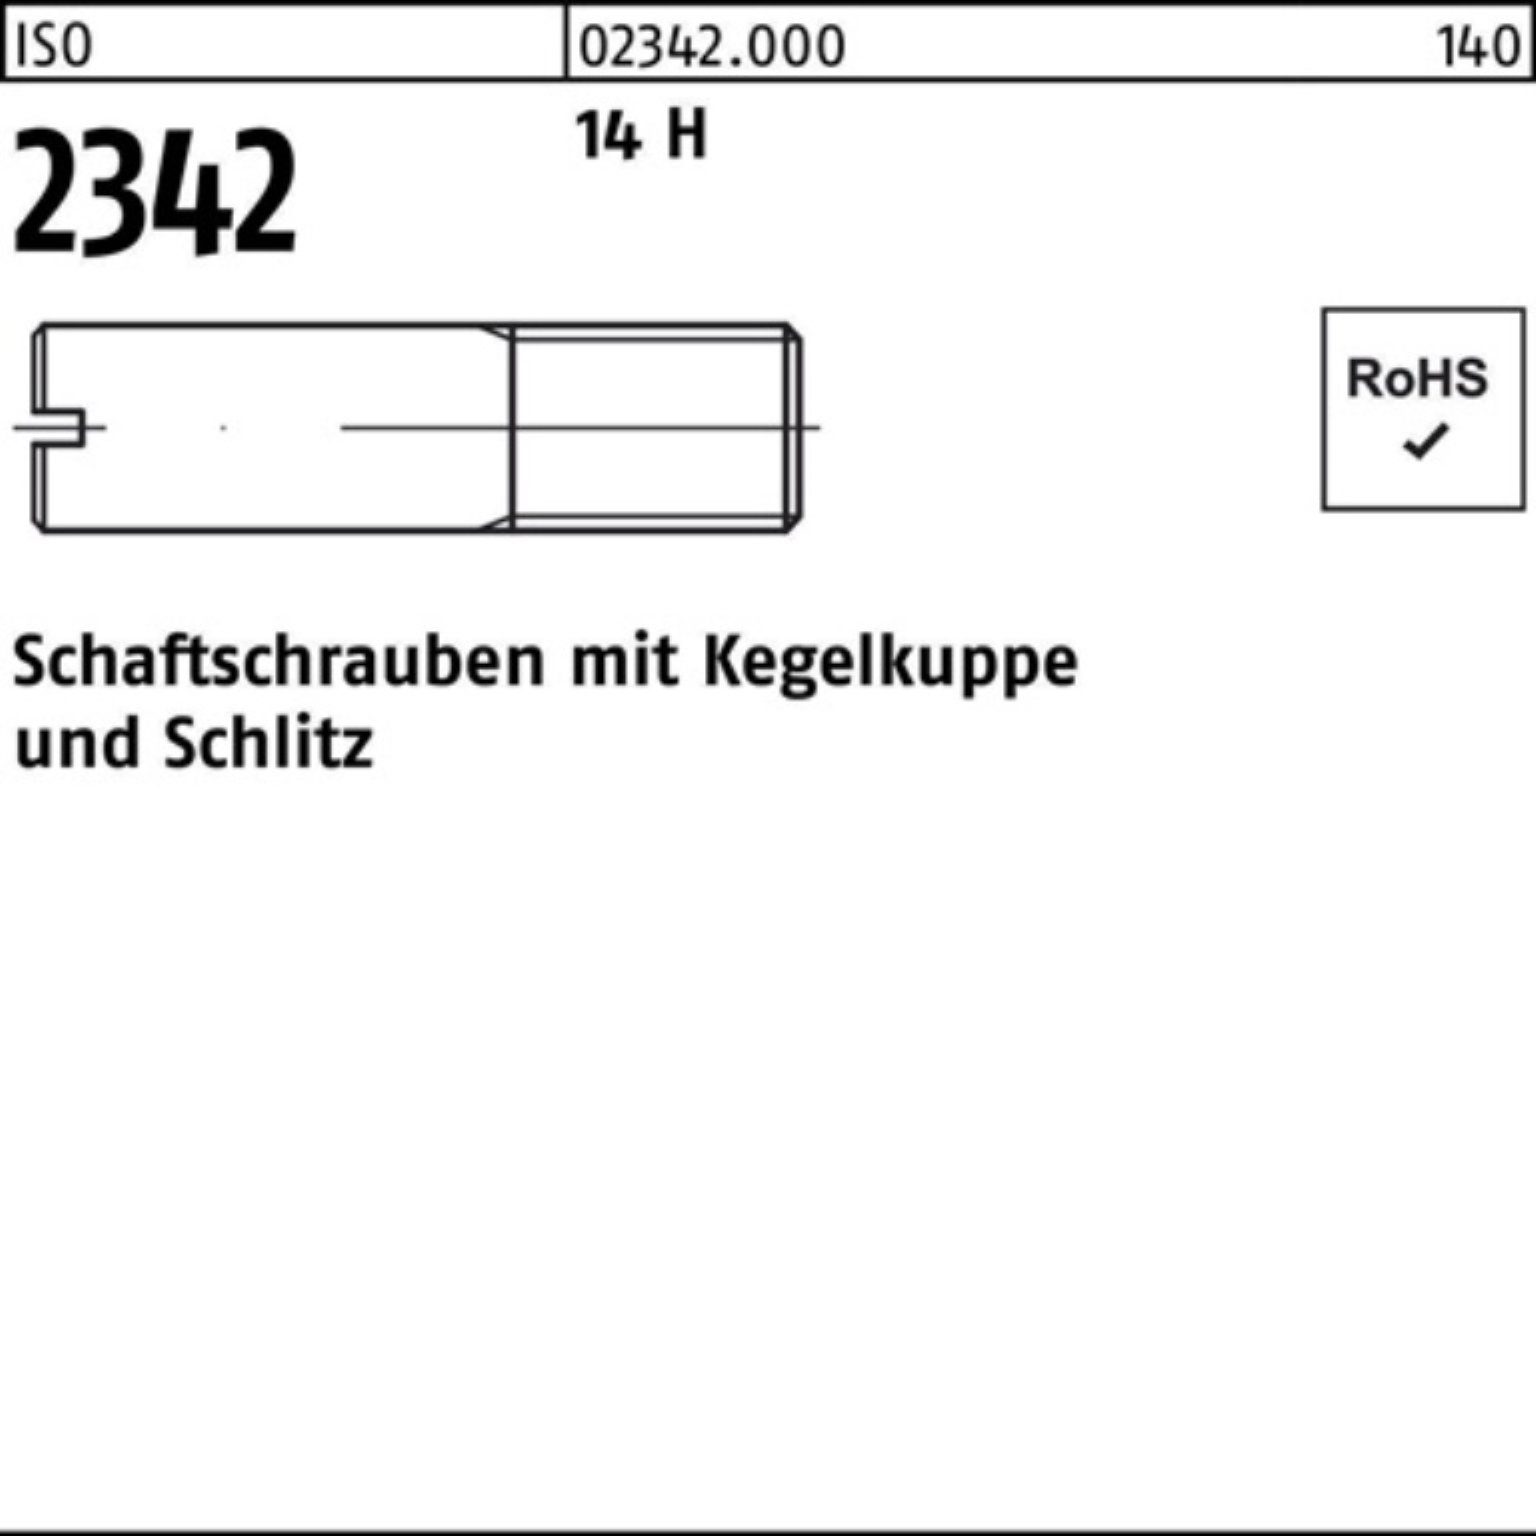 Reyher Schraube 100er Pack Schaftschraube ISO 2342 Kegelkuppe/Schlitz M10x 30 14 H 50